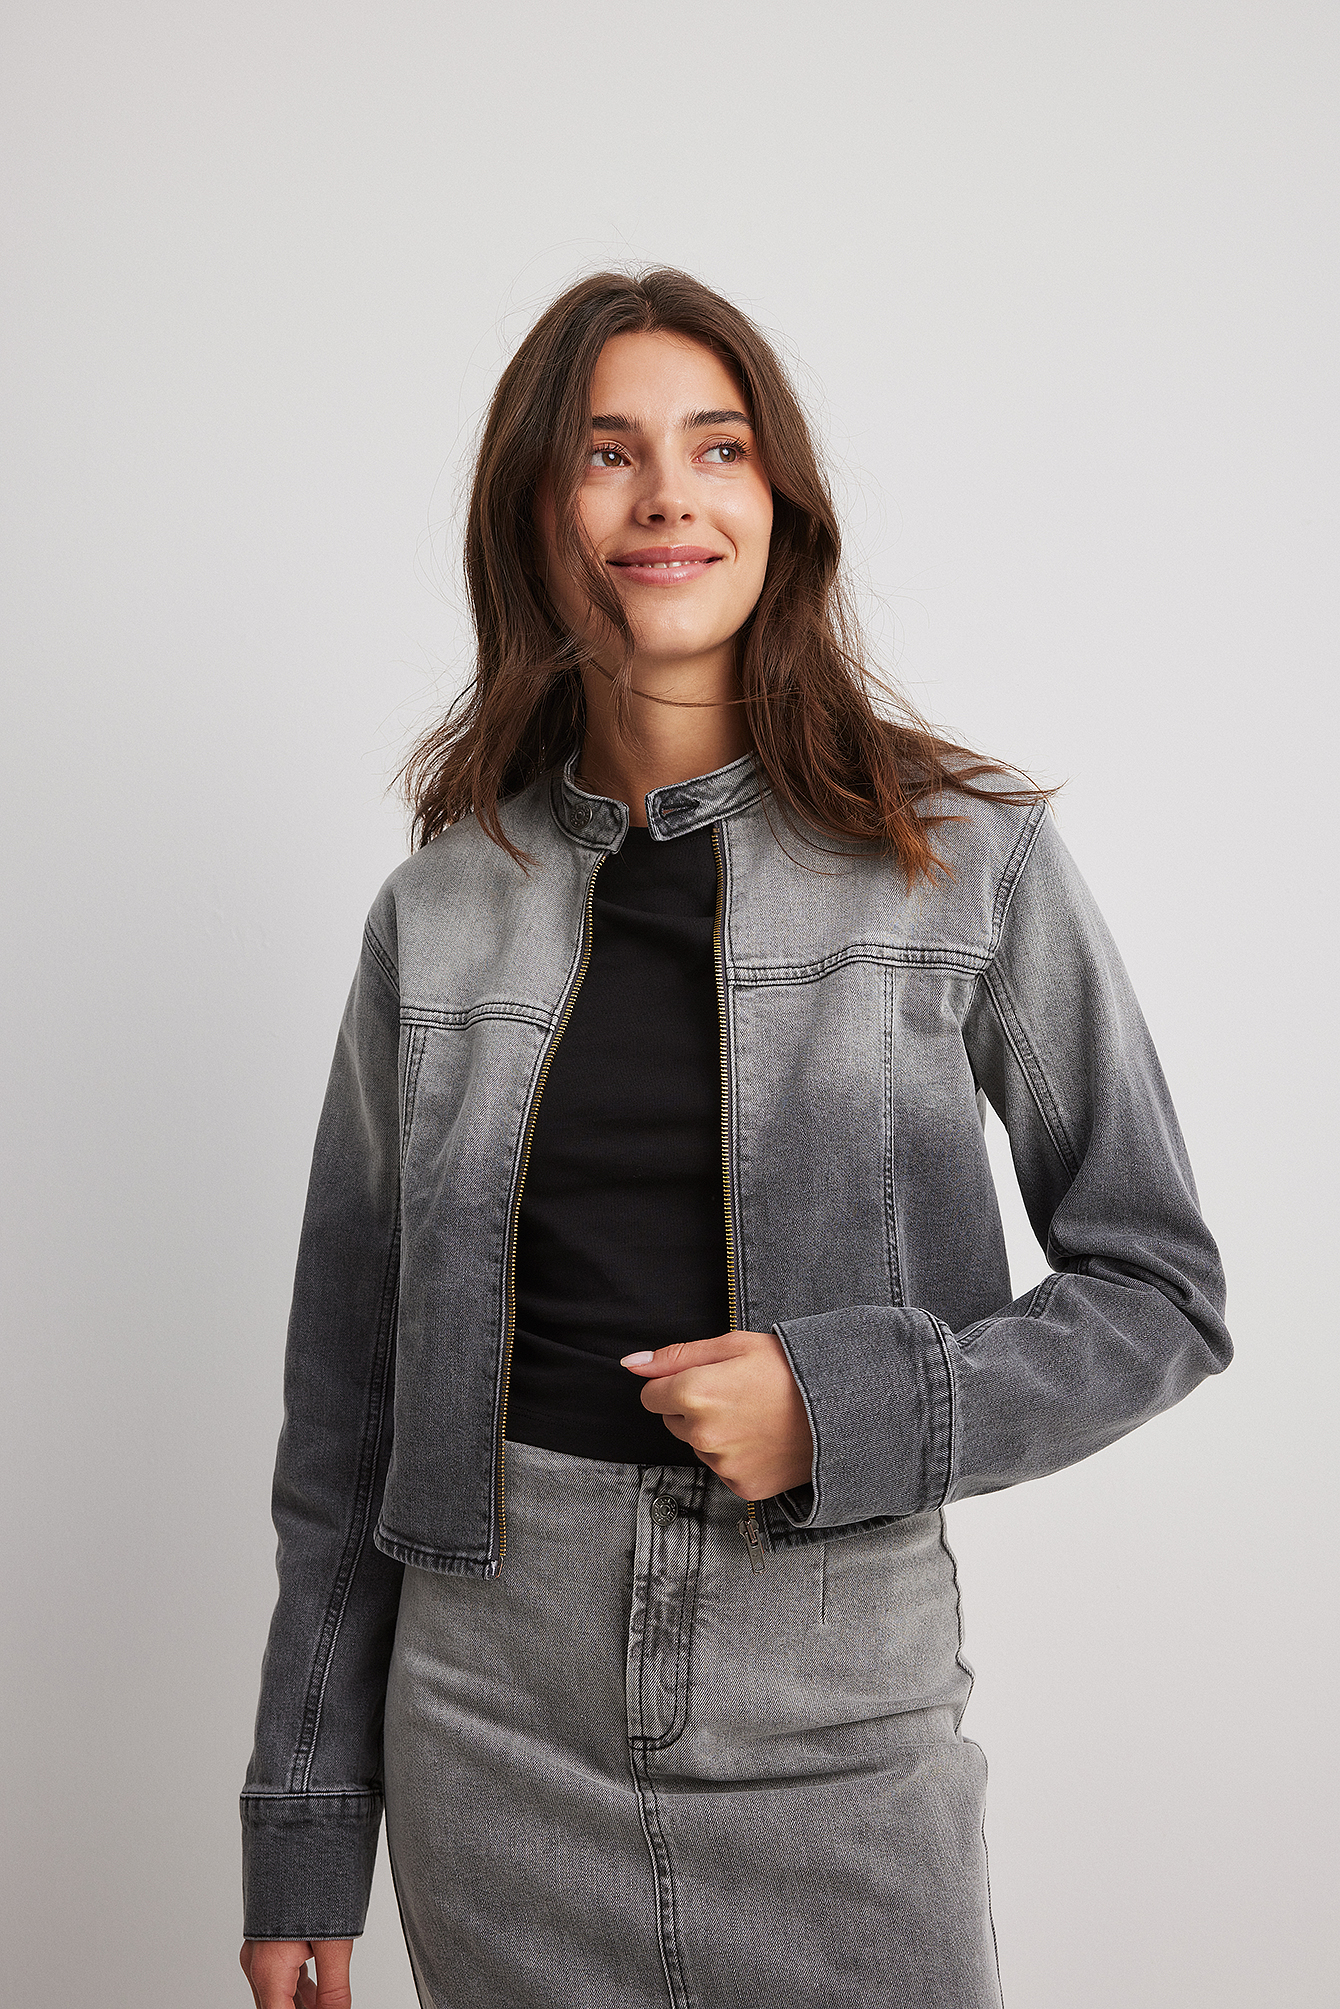 Contour Sports Jacket - Grey – Less Drama Sportswear